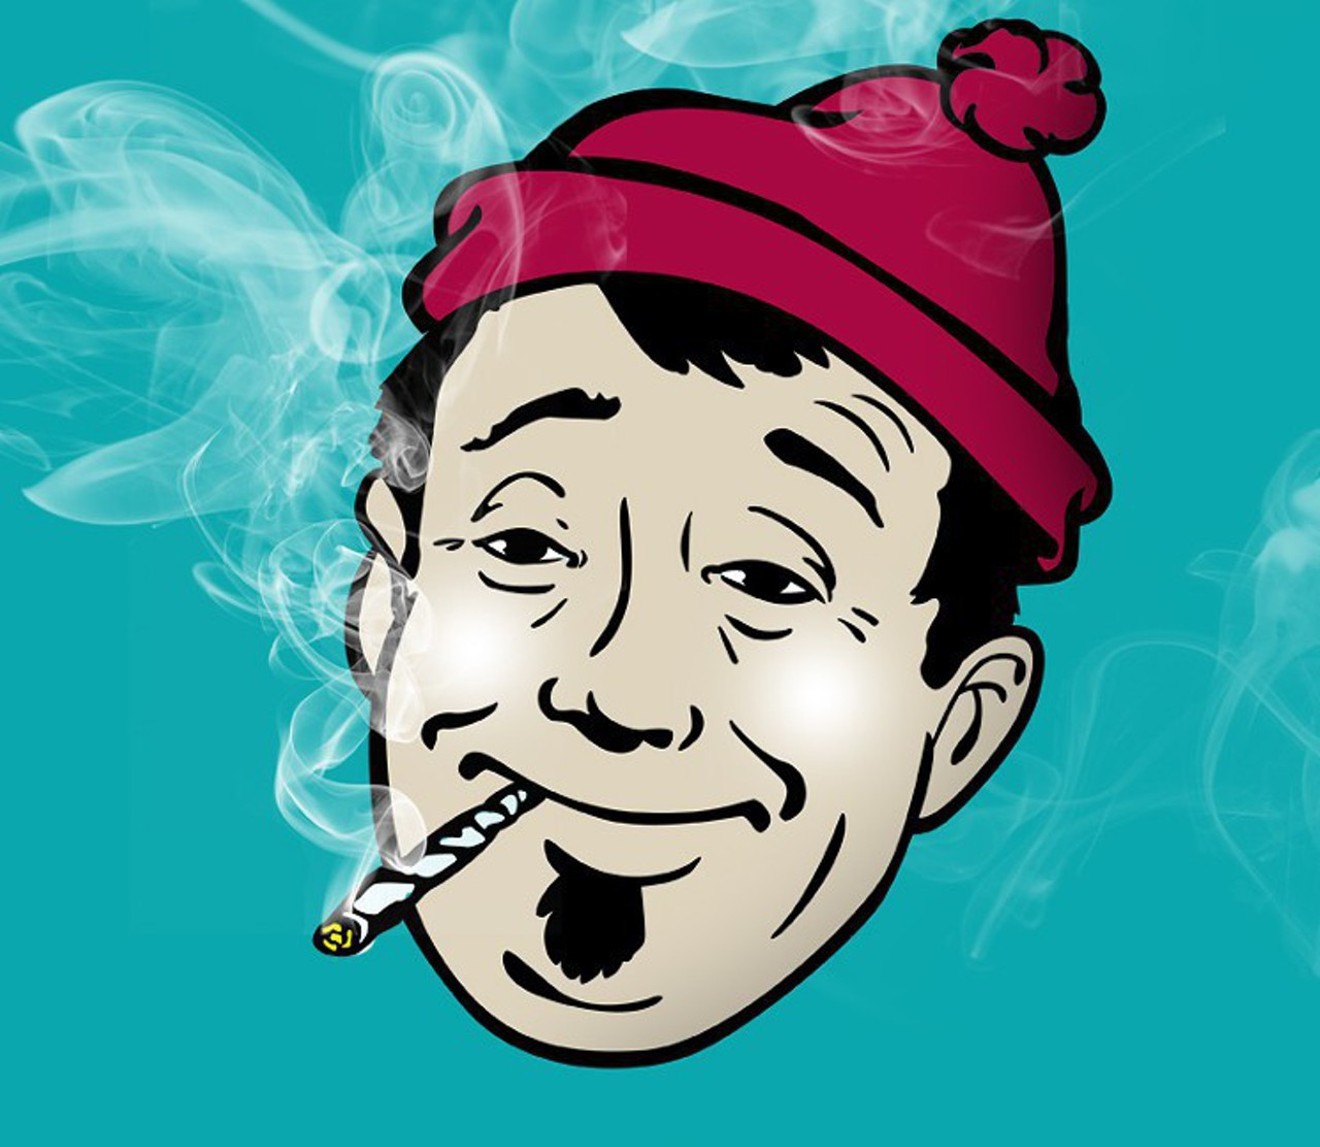 Stoner cartoon smokes a joint